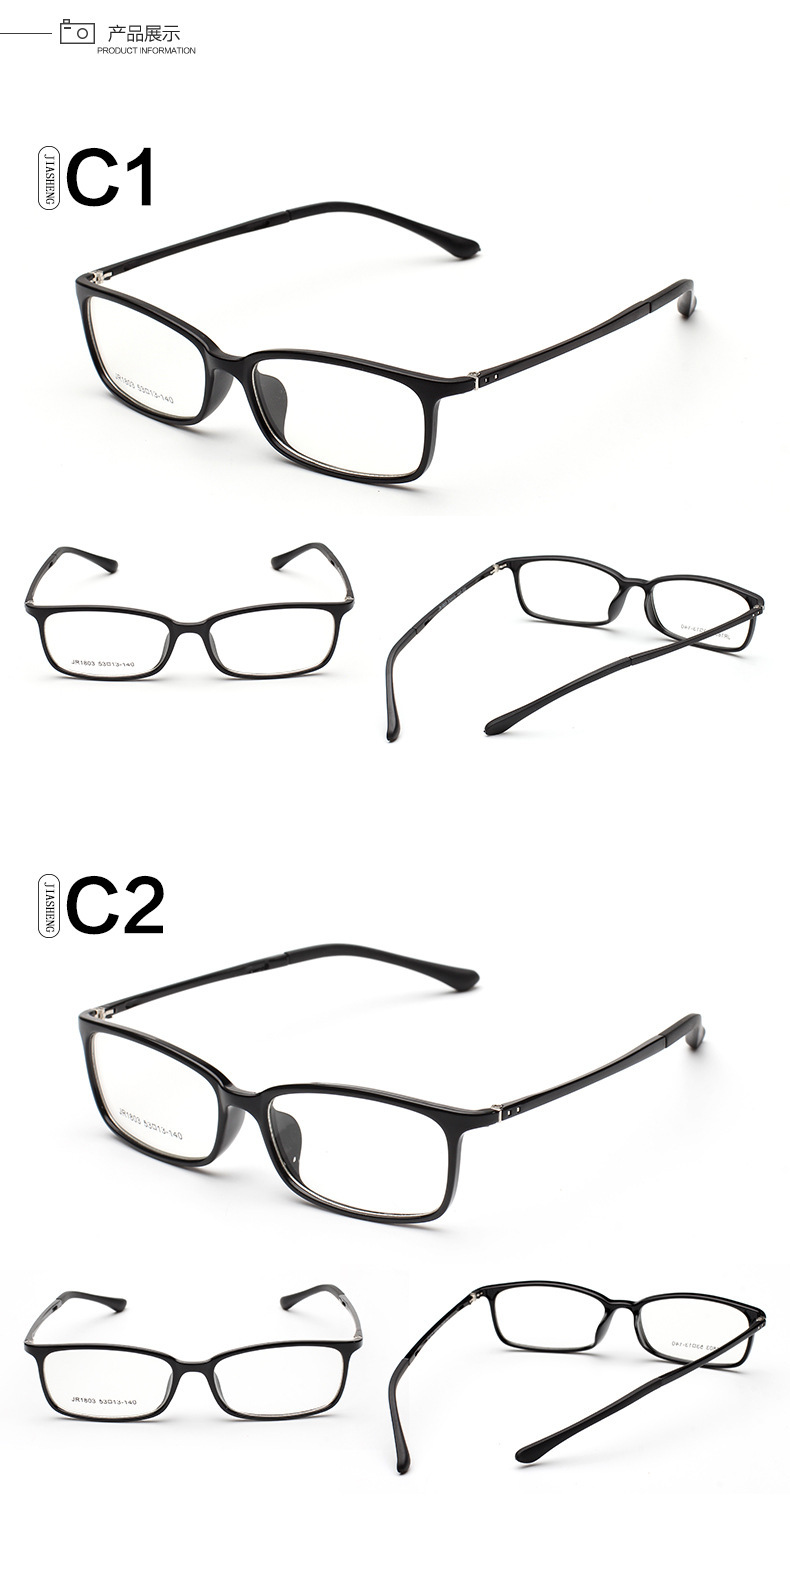 新款时尚潮人tr90平光镜超轻全框近视眼镜框架学生眼镜架厂家批发